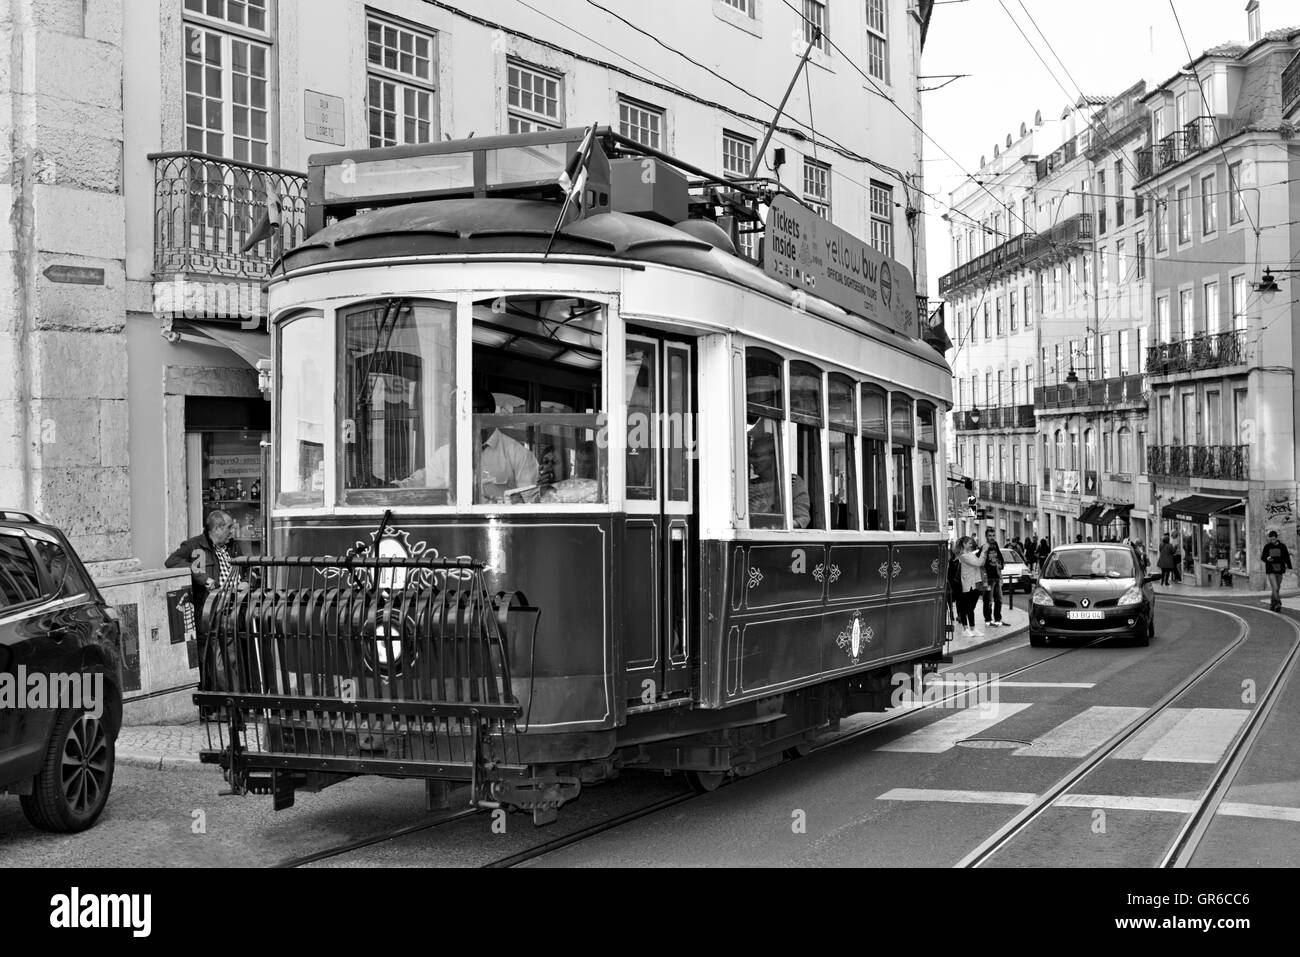 Il portogallo Lisbona: tram storico per le vie del centro cittadino di Lisbona (bw) Foto Stock